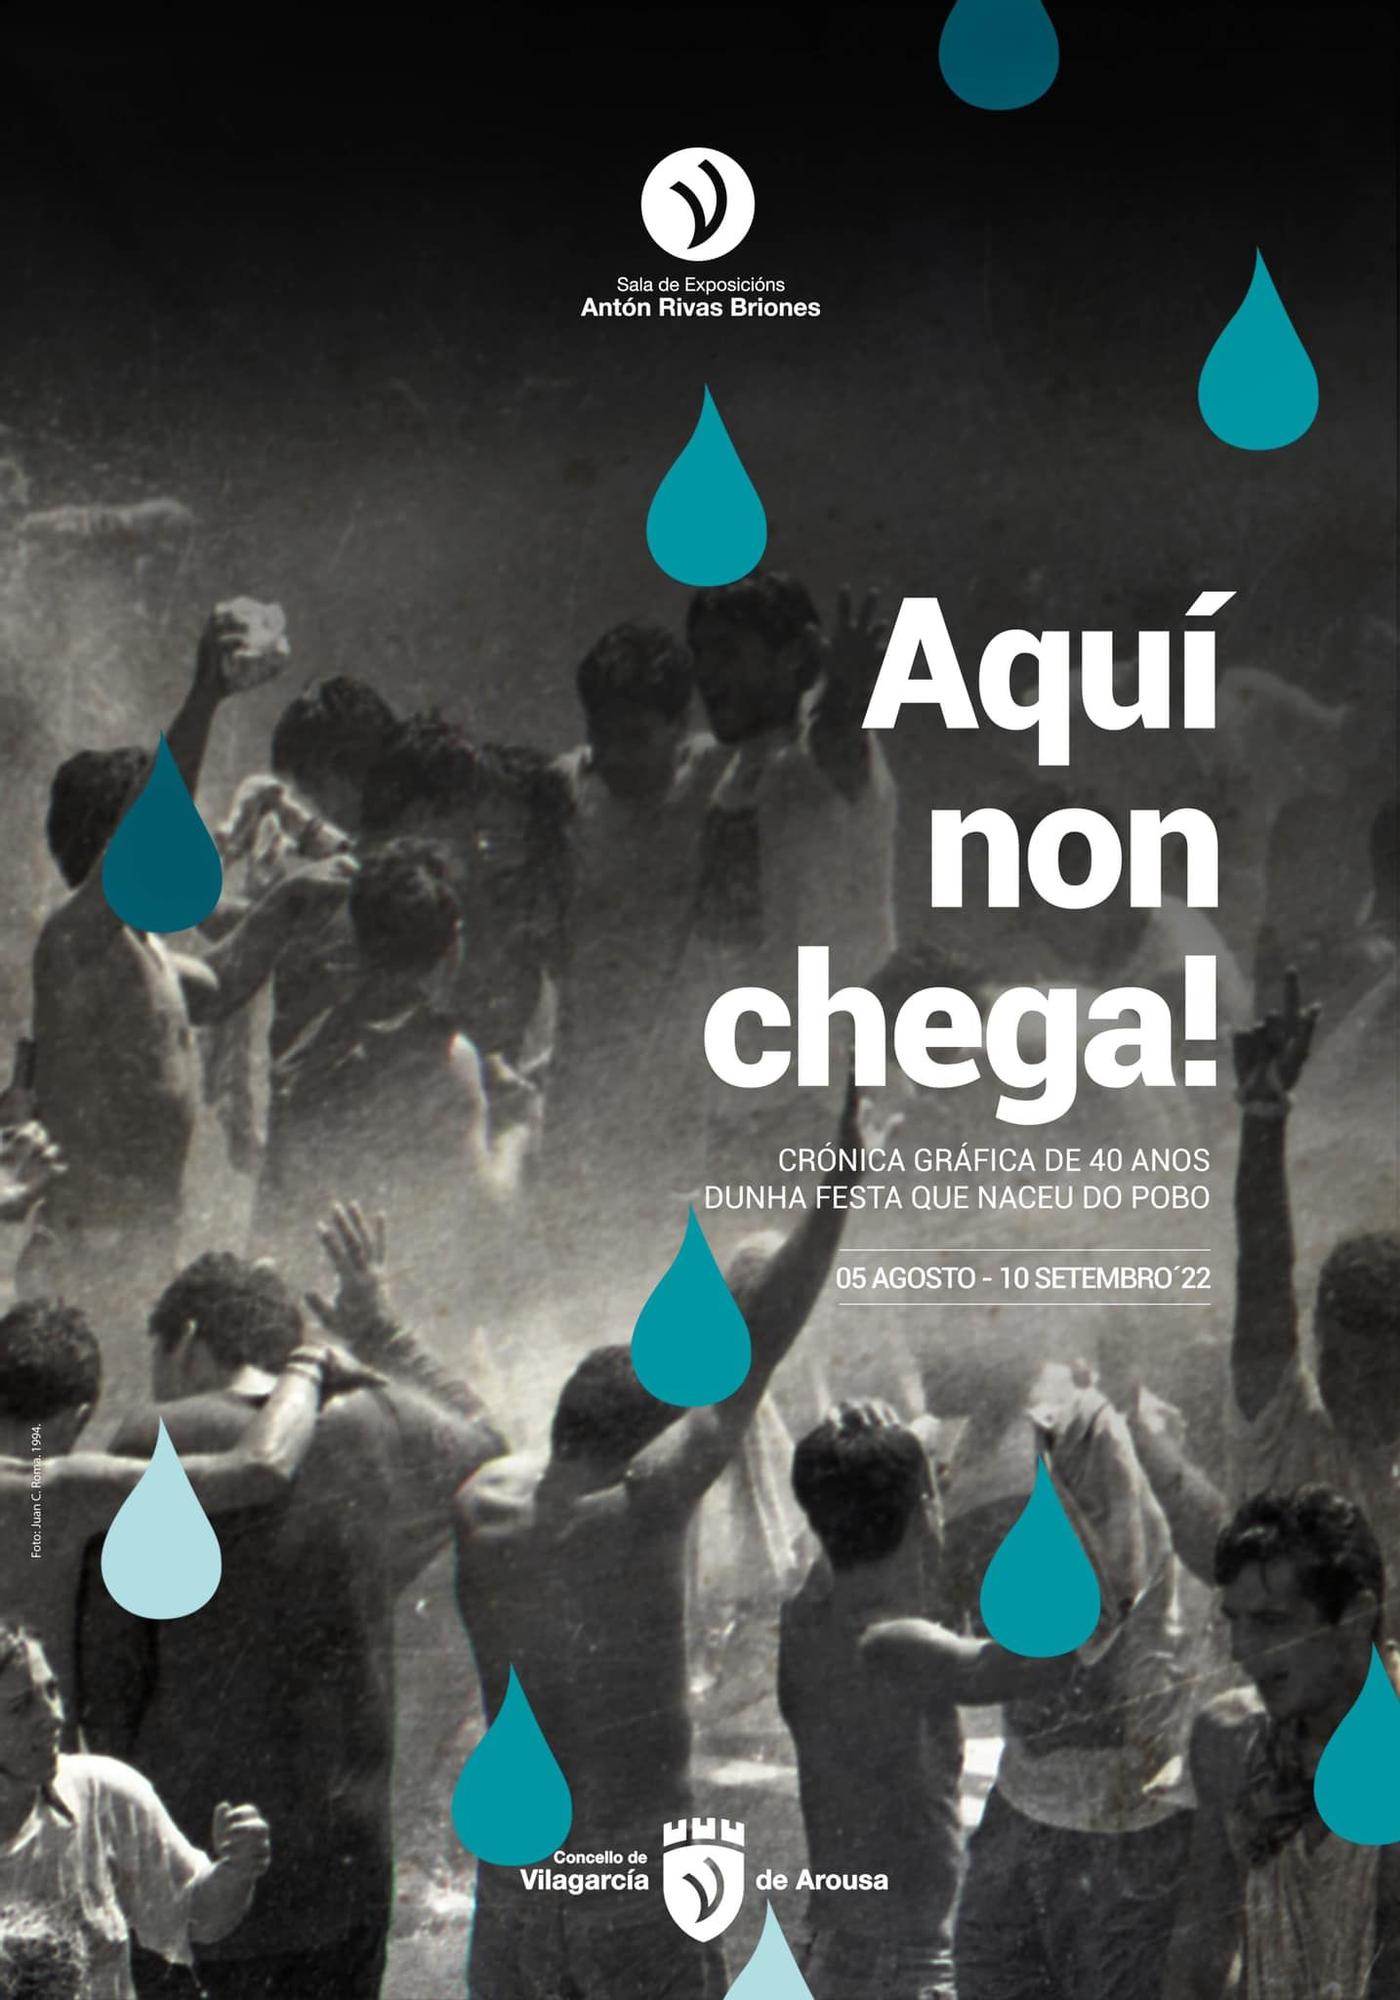 El cartel de la exposición sobre la fiesta del agua.